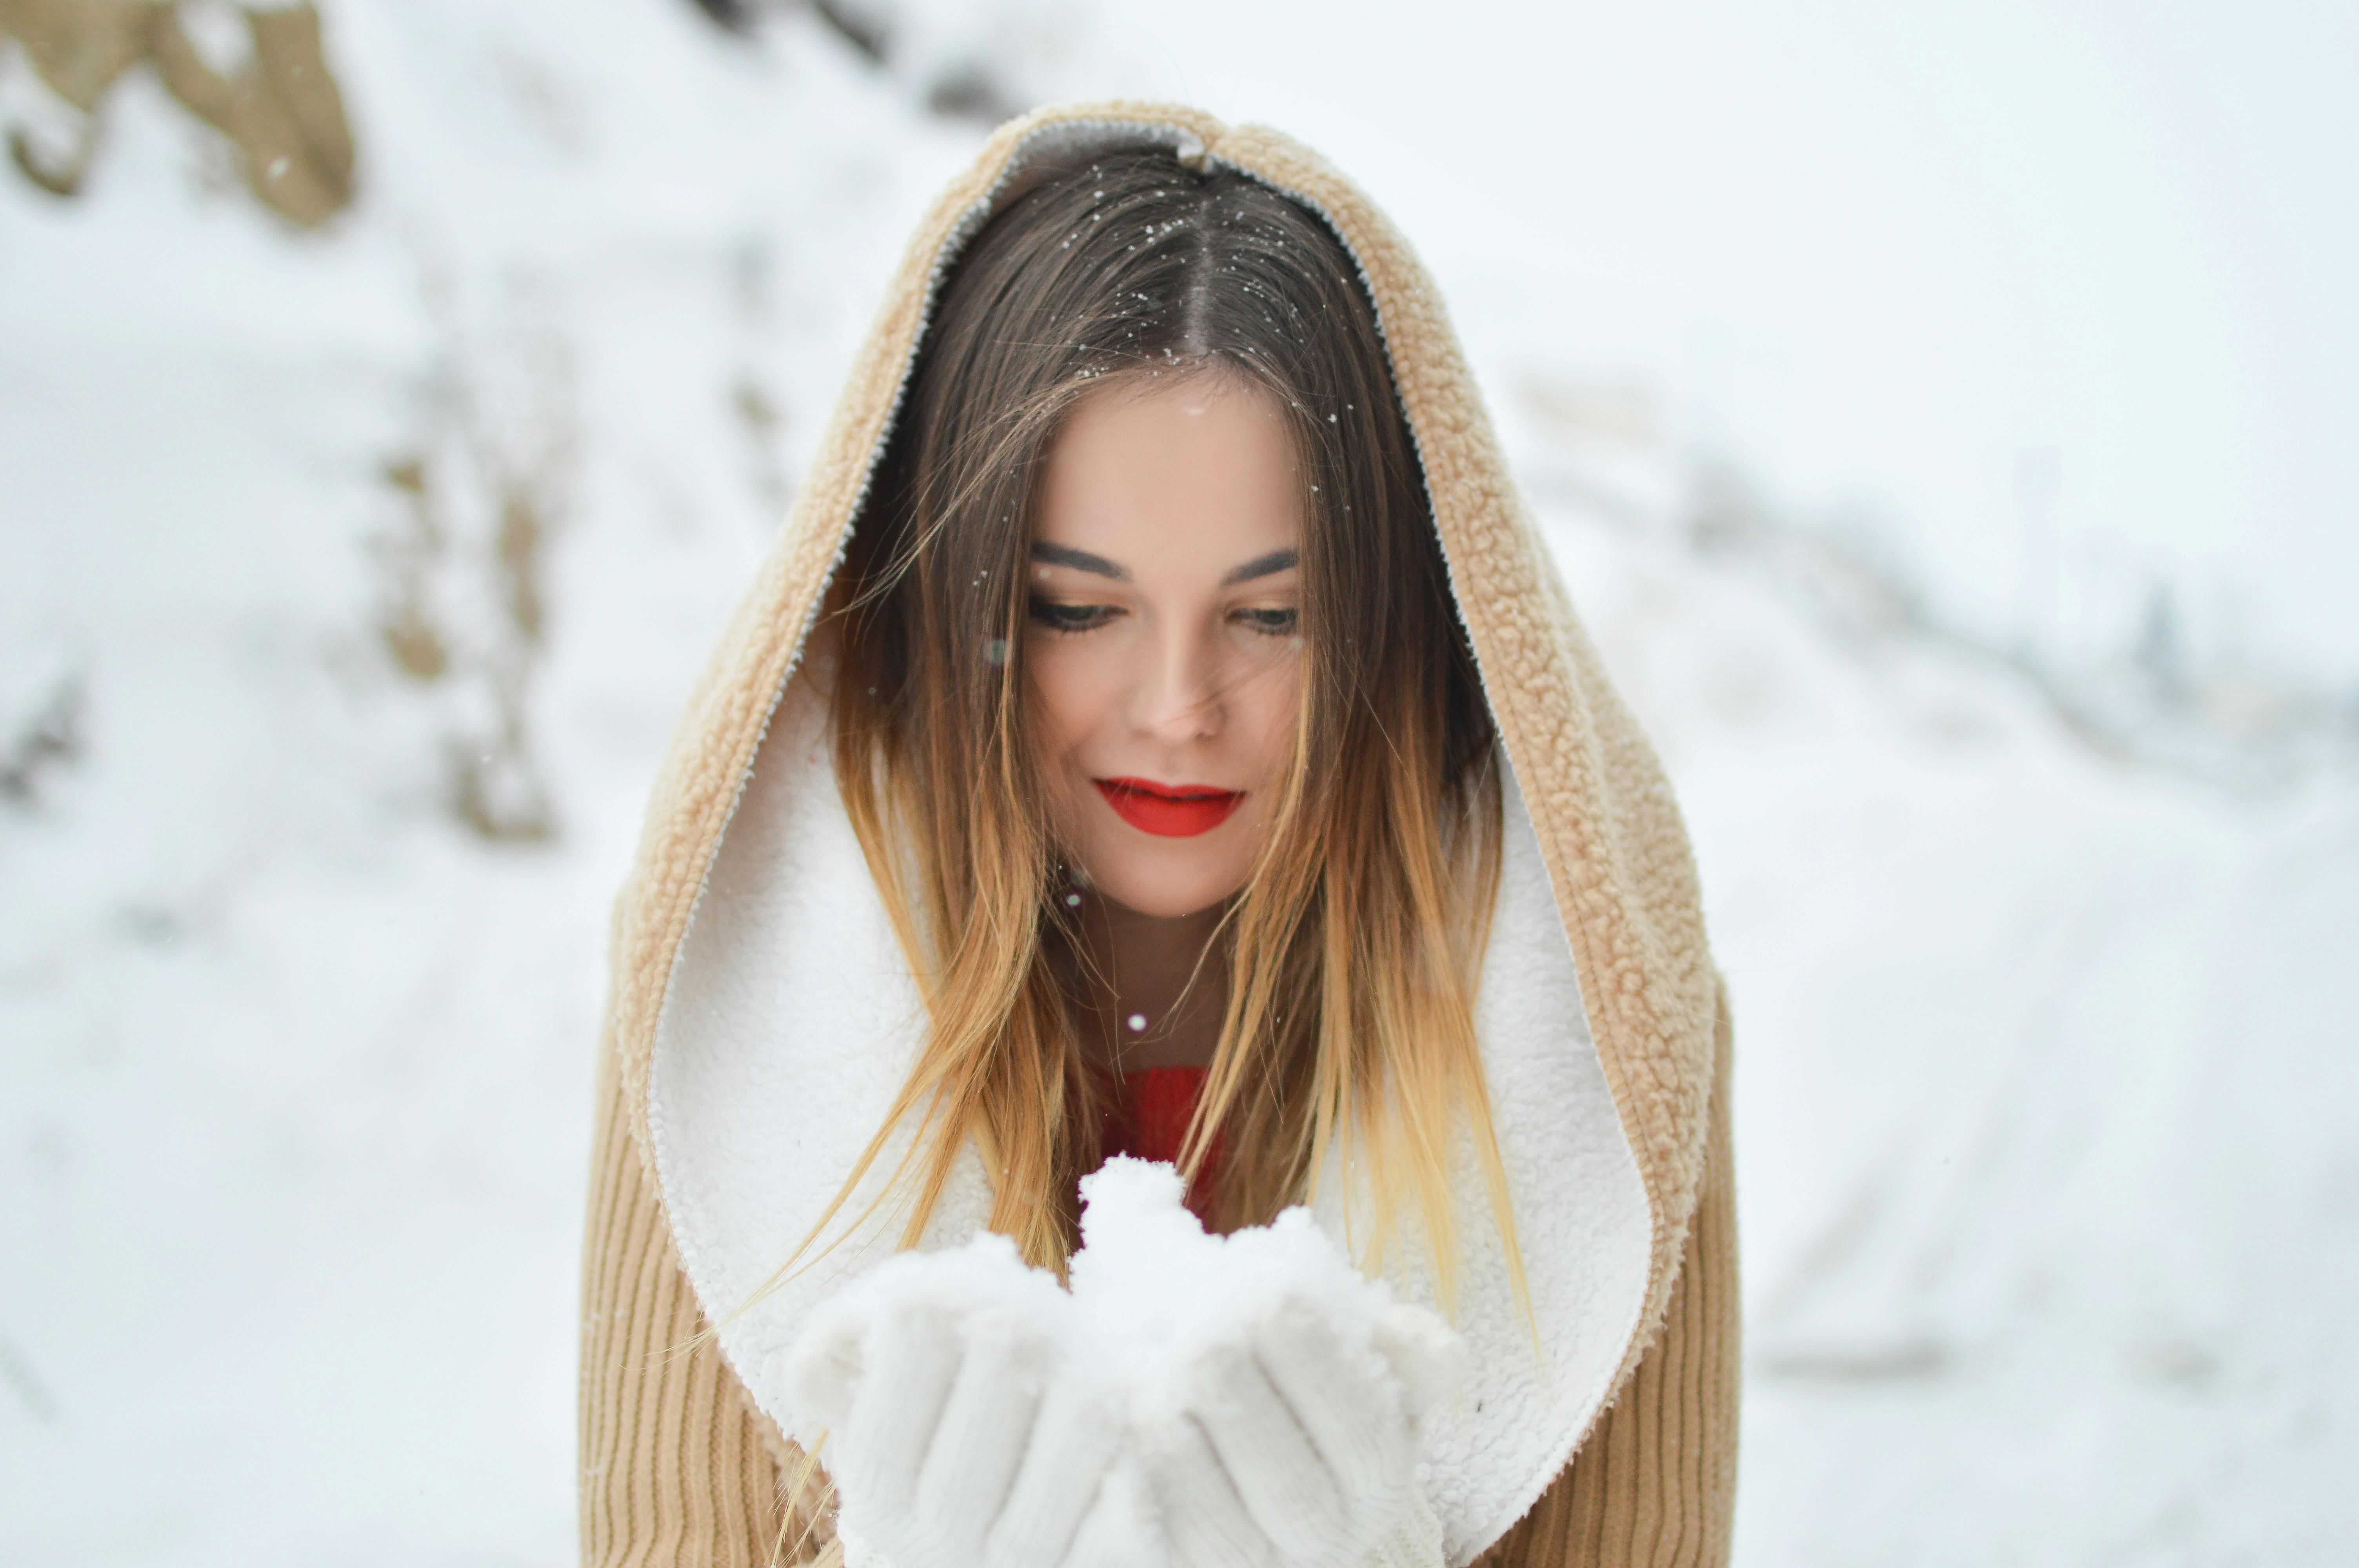 Photographie d’hiver : comment réaliser des photos en hiver ?